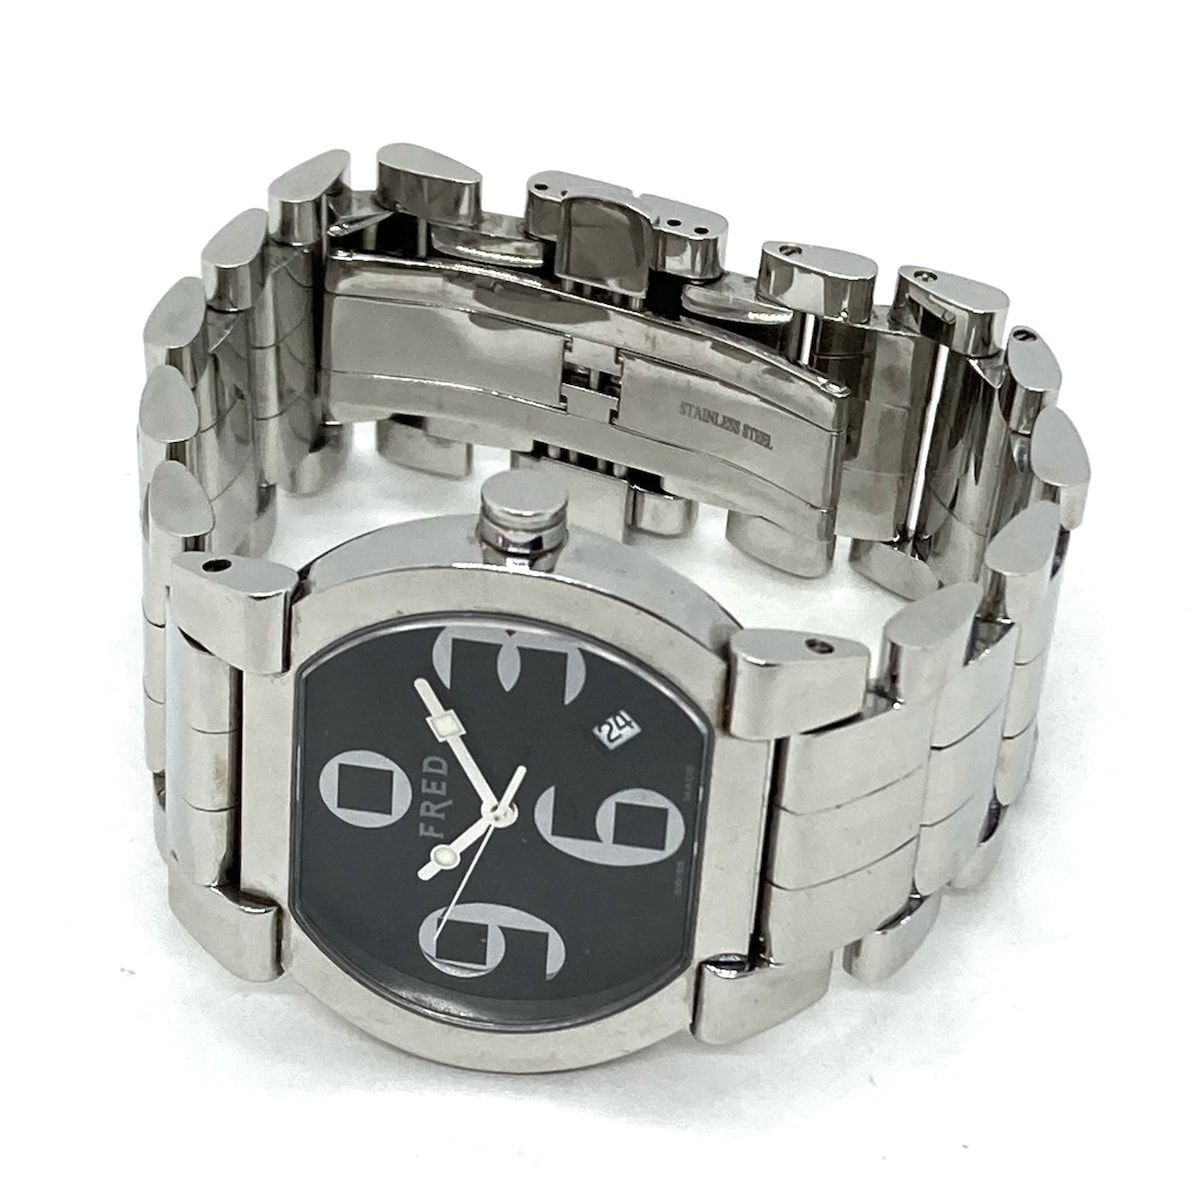 FRED(フレッド) 腕時計 ムーブワン FD014110 レディース 黒 - メルカリ